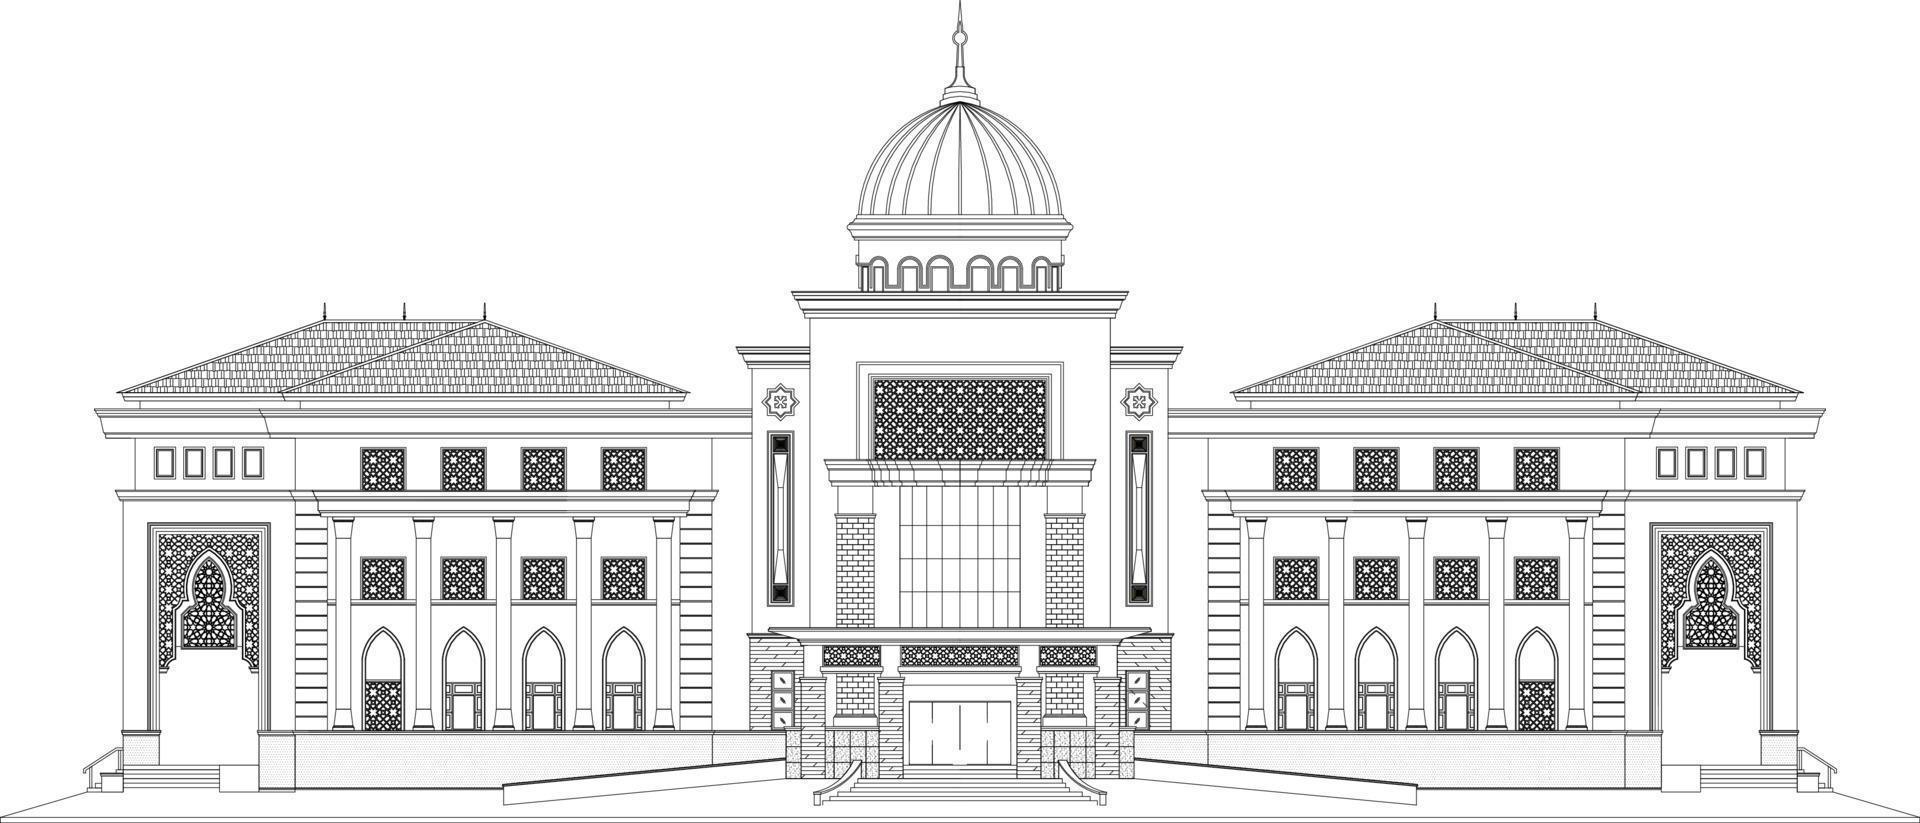 kontinuerlig linje teckning av byggnad islamisk, bostads- byggnad begrepp, logotyp, symbol, konstruktion, illustration enkel.vektor. ett linje teckning av en hus. hus 2d teckning. vektor